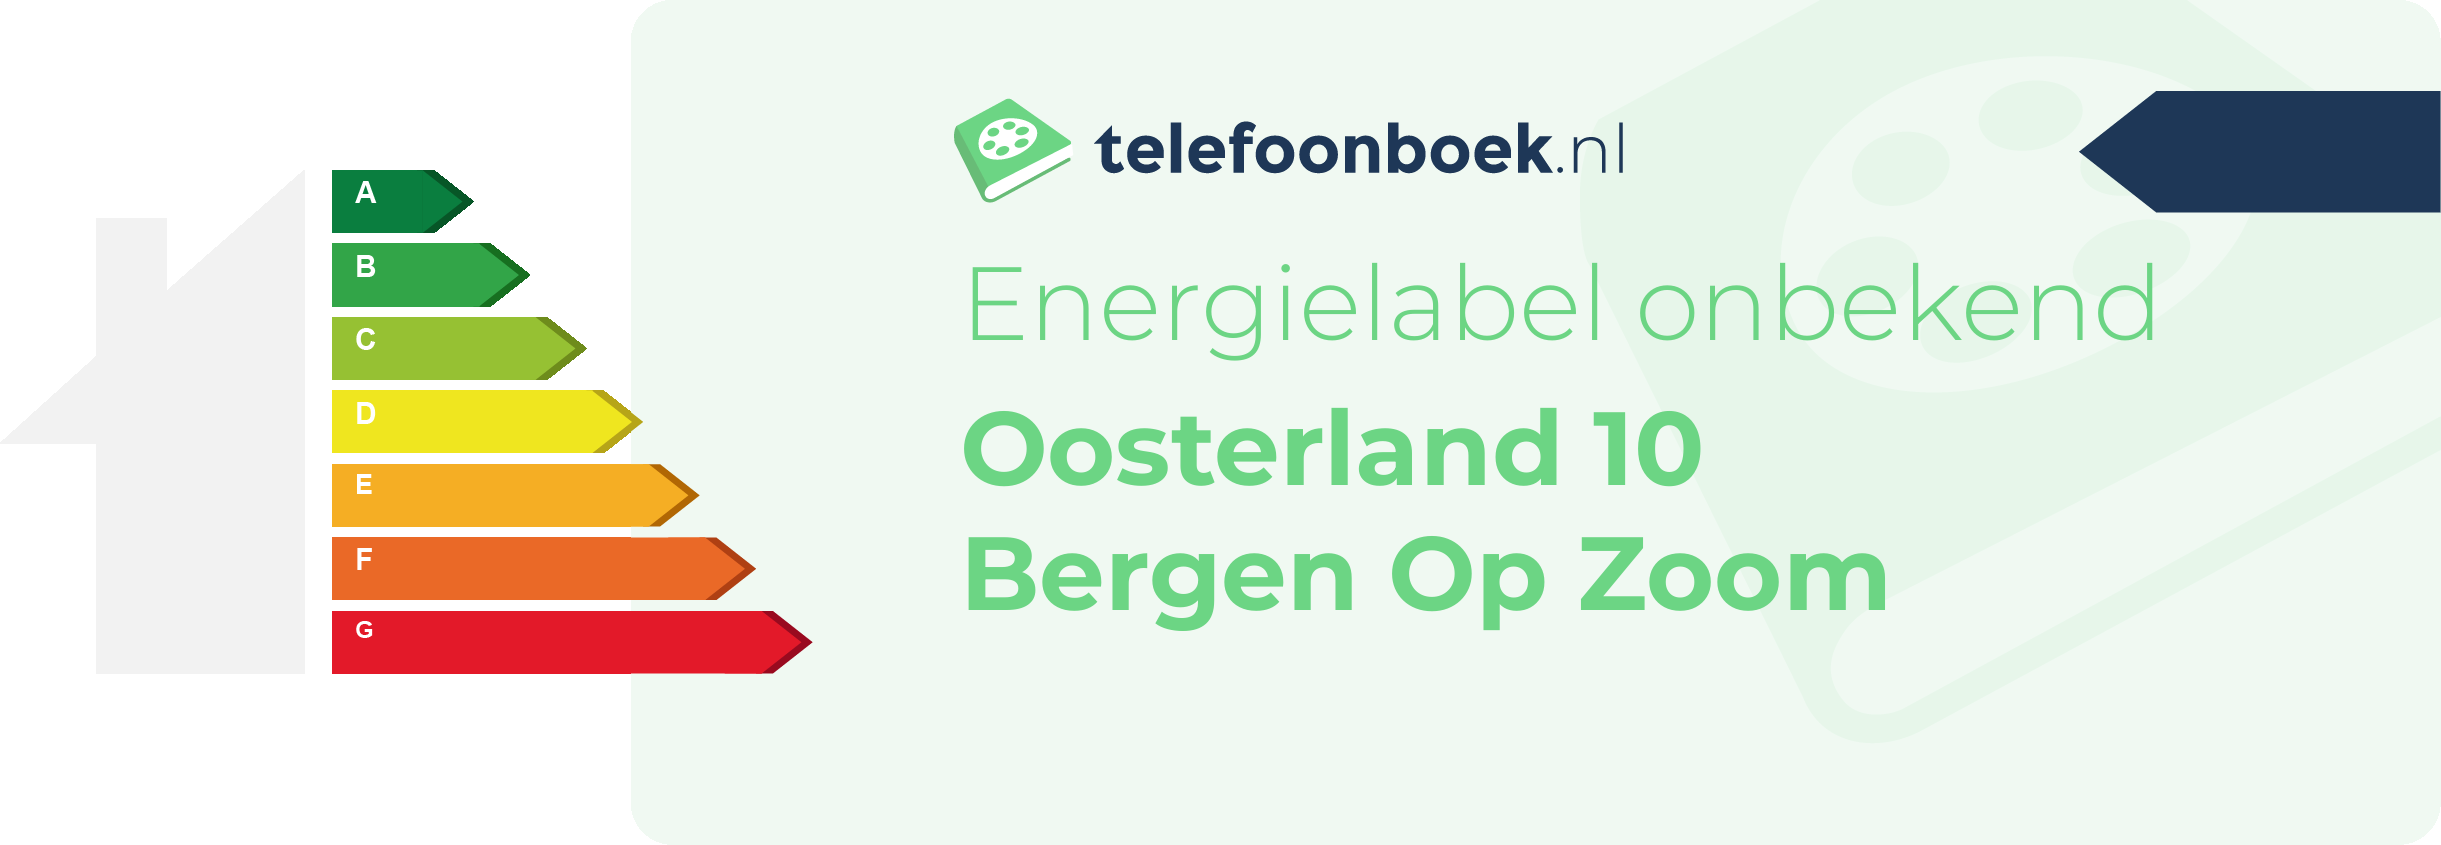 Energielabel Oosterland 10 Bergen Op Zoom